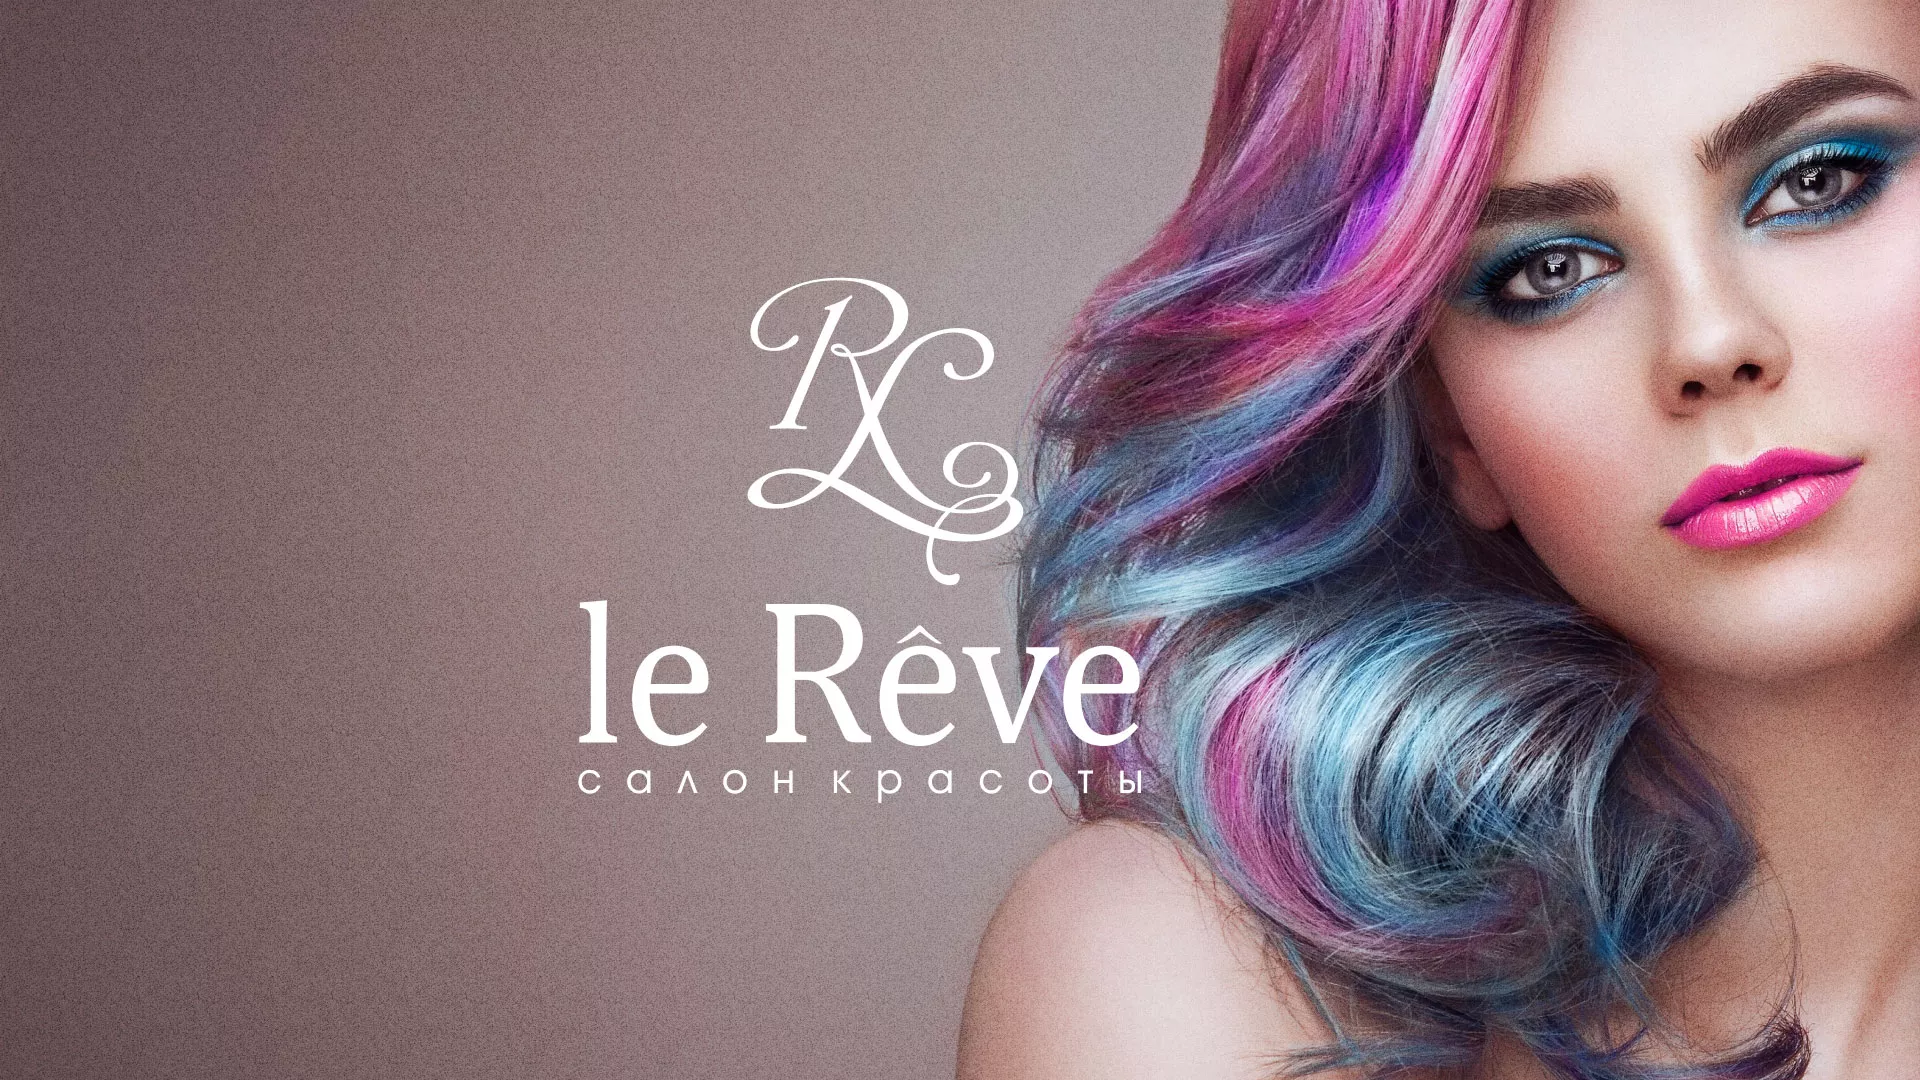 Создание сайта для салона красоты «Le Reve» в Рославле